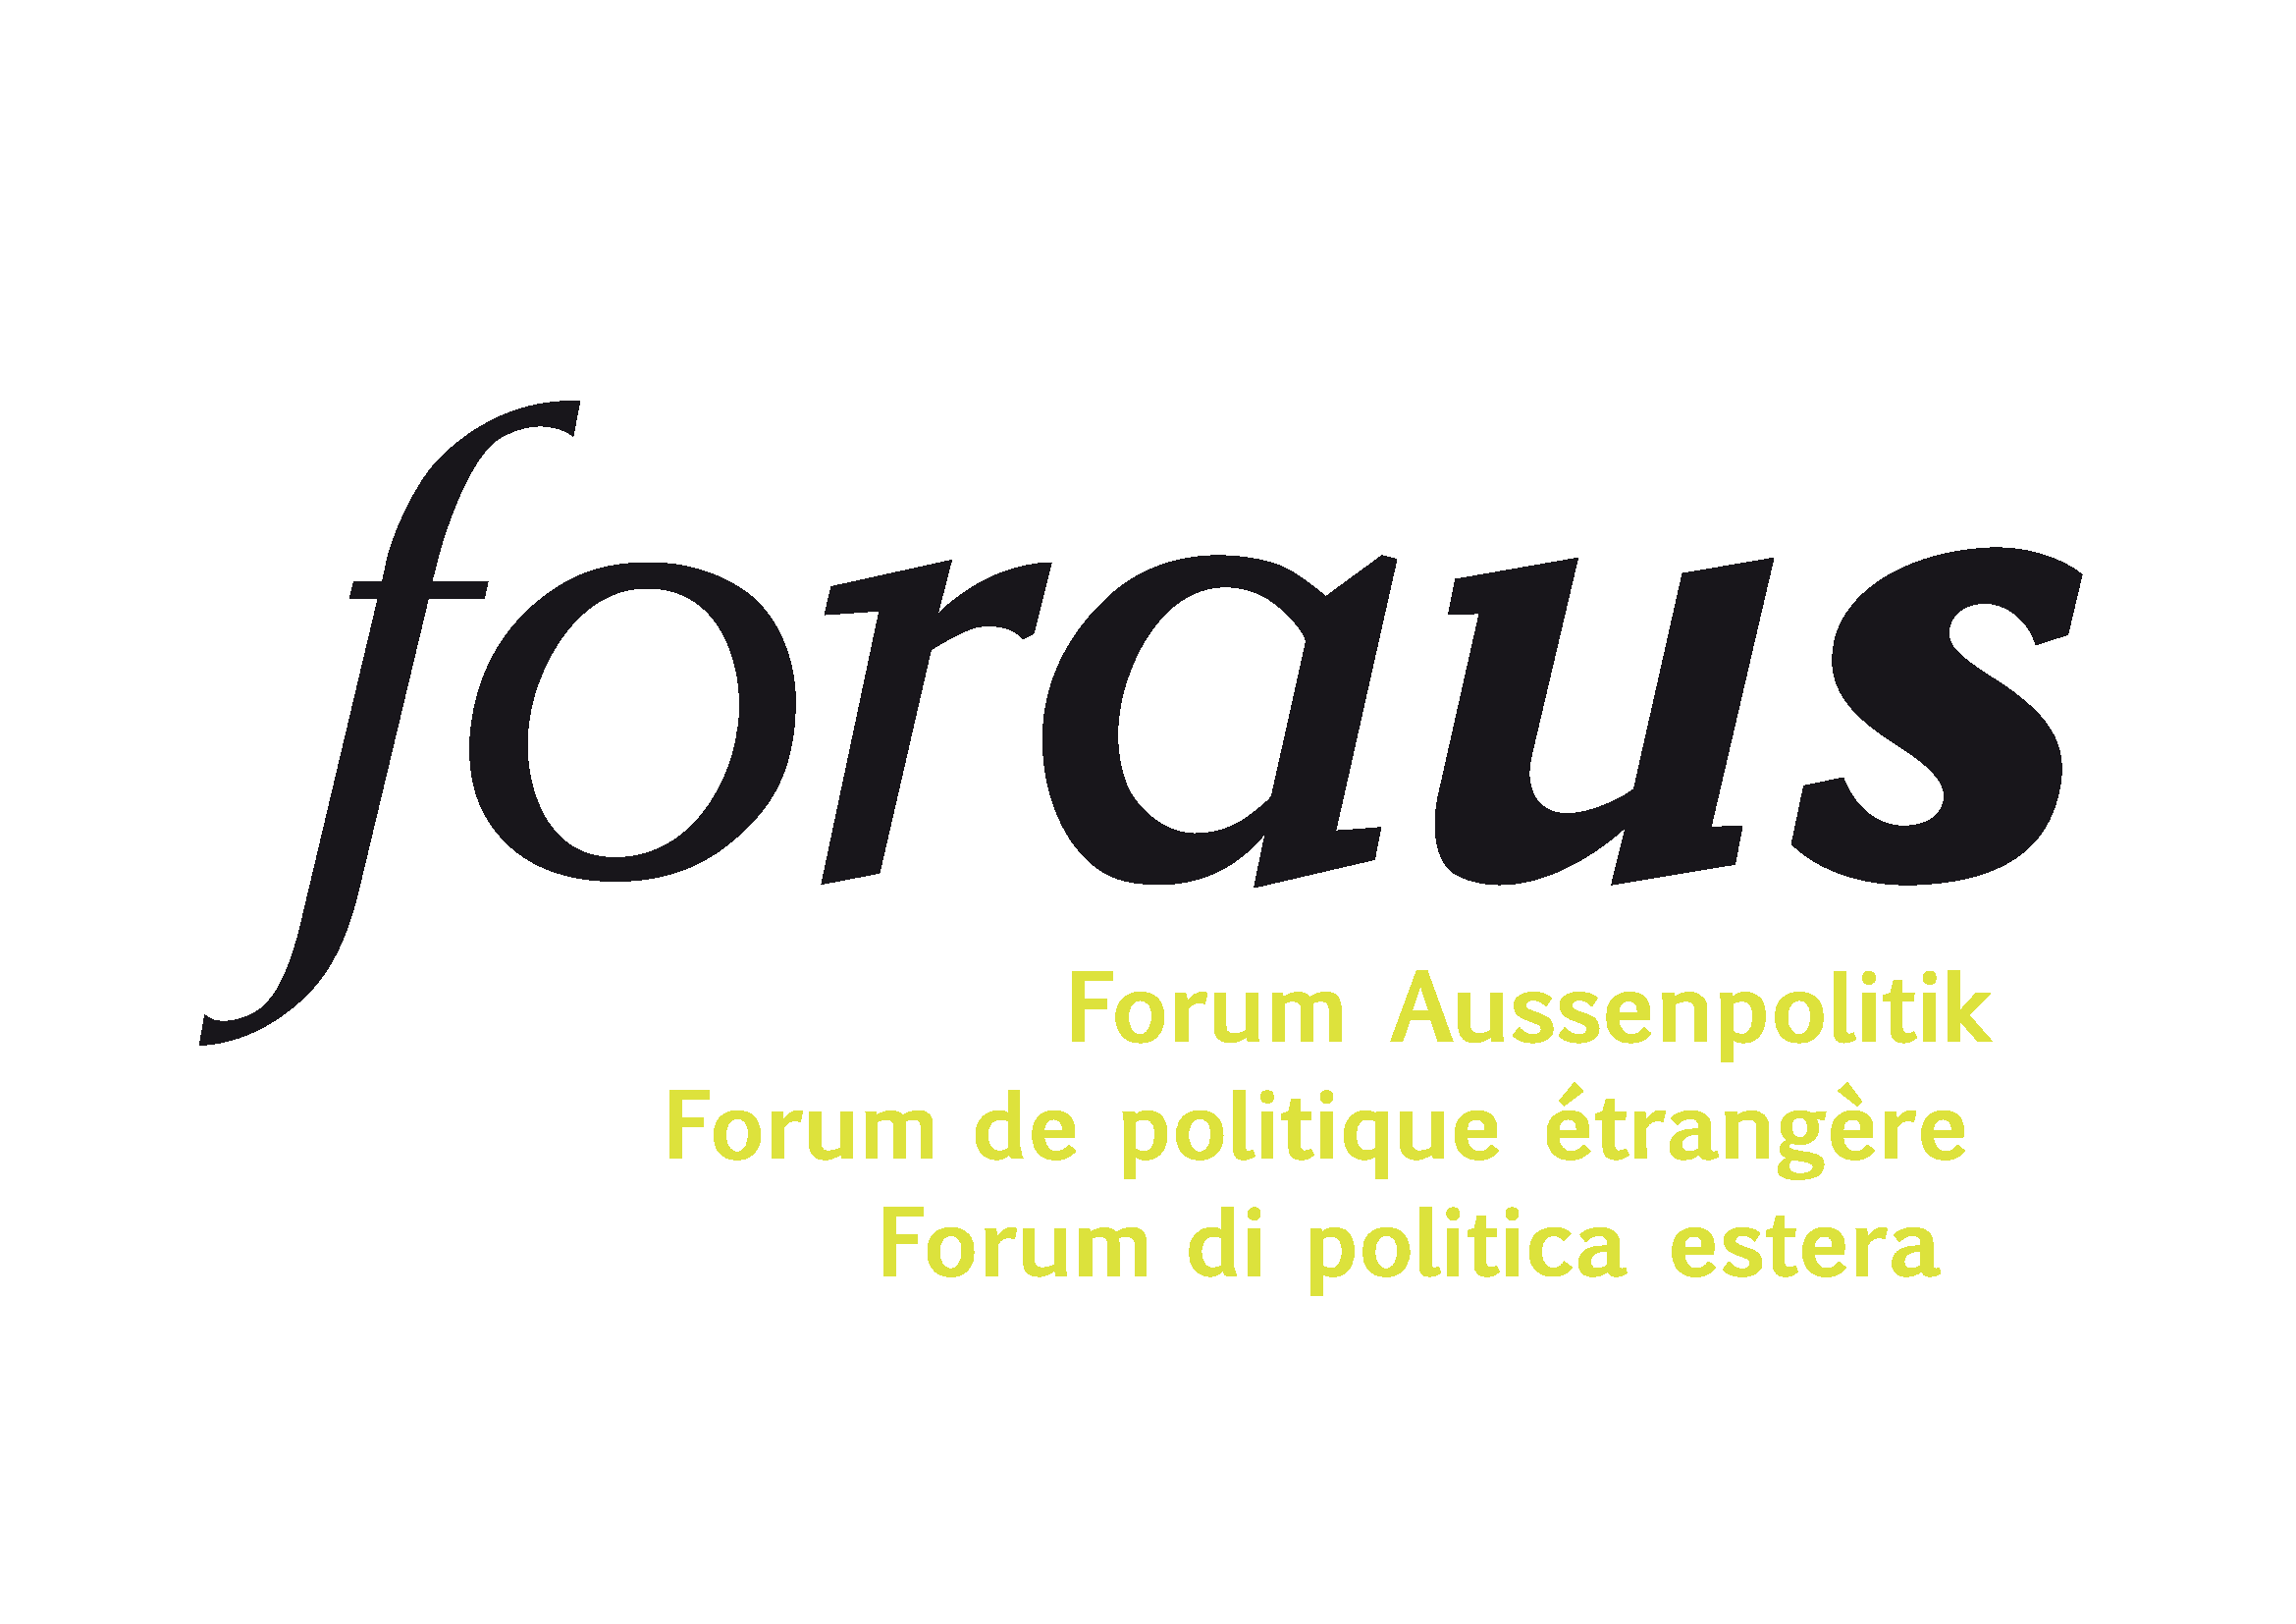 Copy of logo foraus_dreisprachig.png